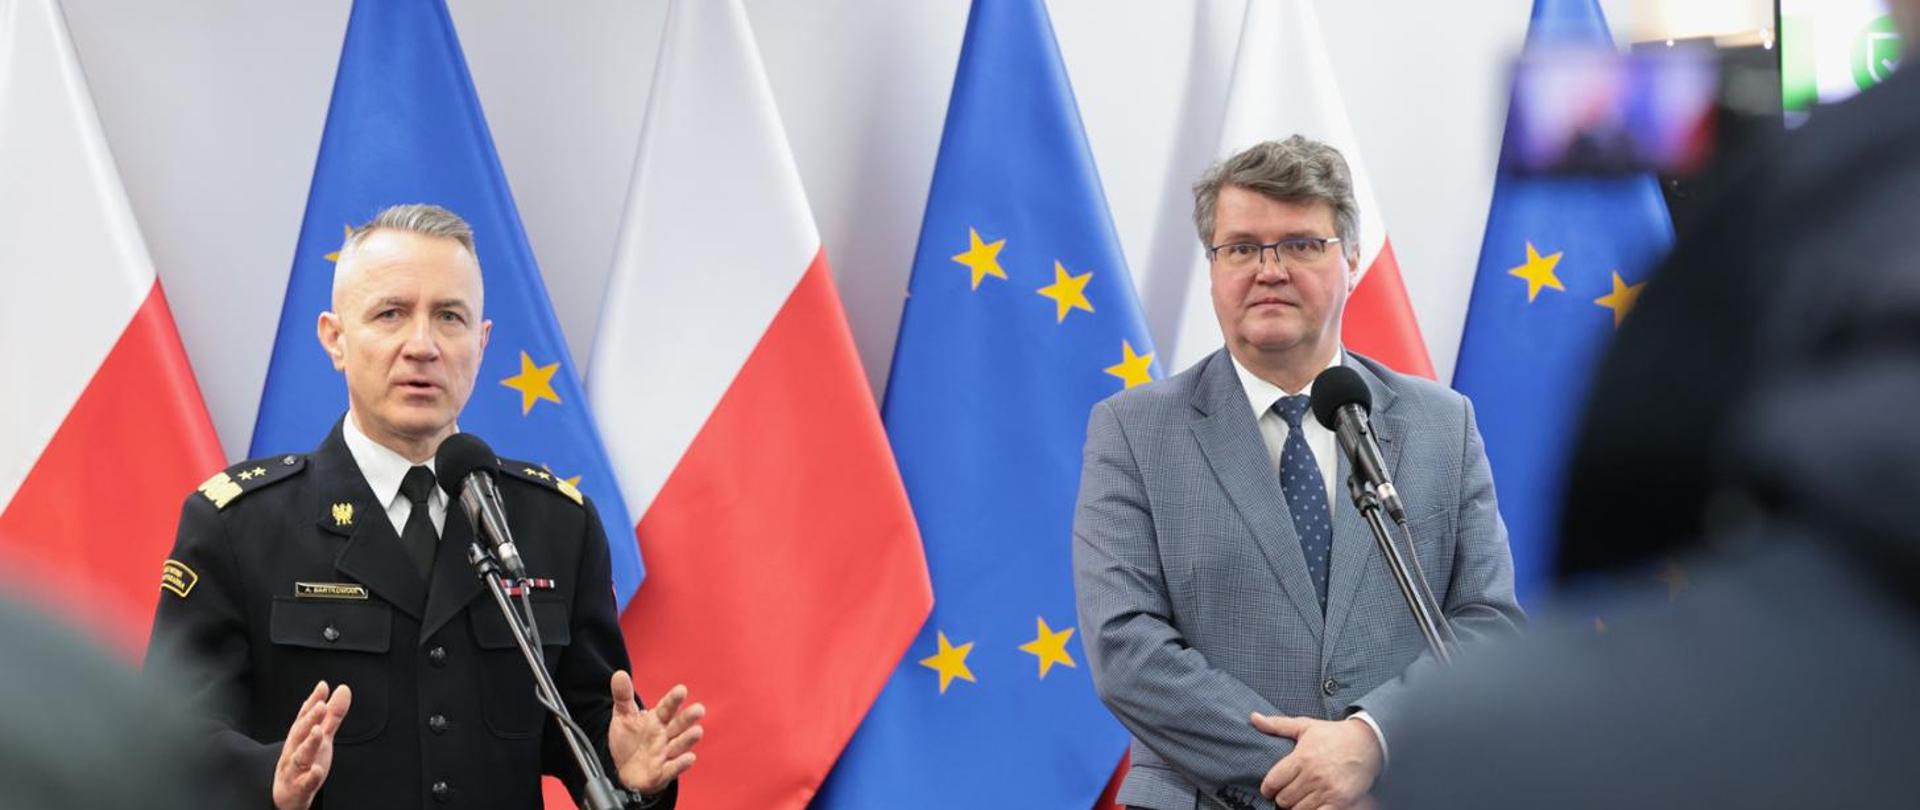 Mężczyzna w strażackim mundurze generalskim oraz drugi w okularach i szarym garniturze stojący przed mikrofonami. Za nim flagi Polski oraz Unii Europejskiej.